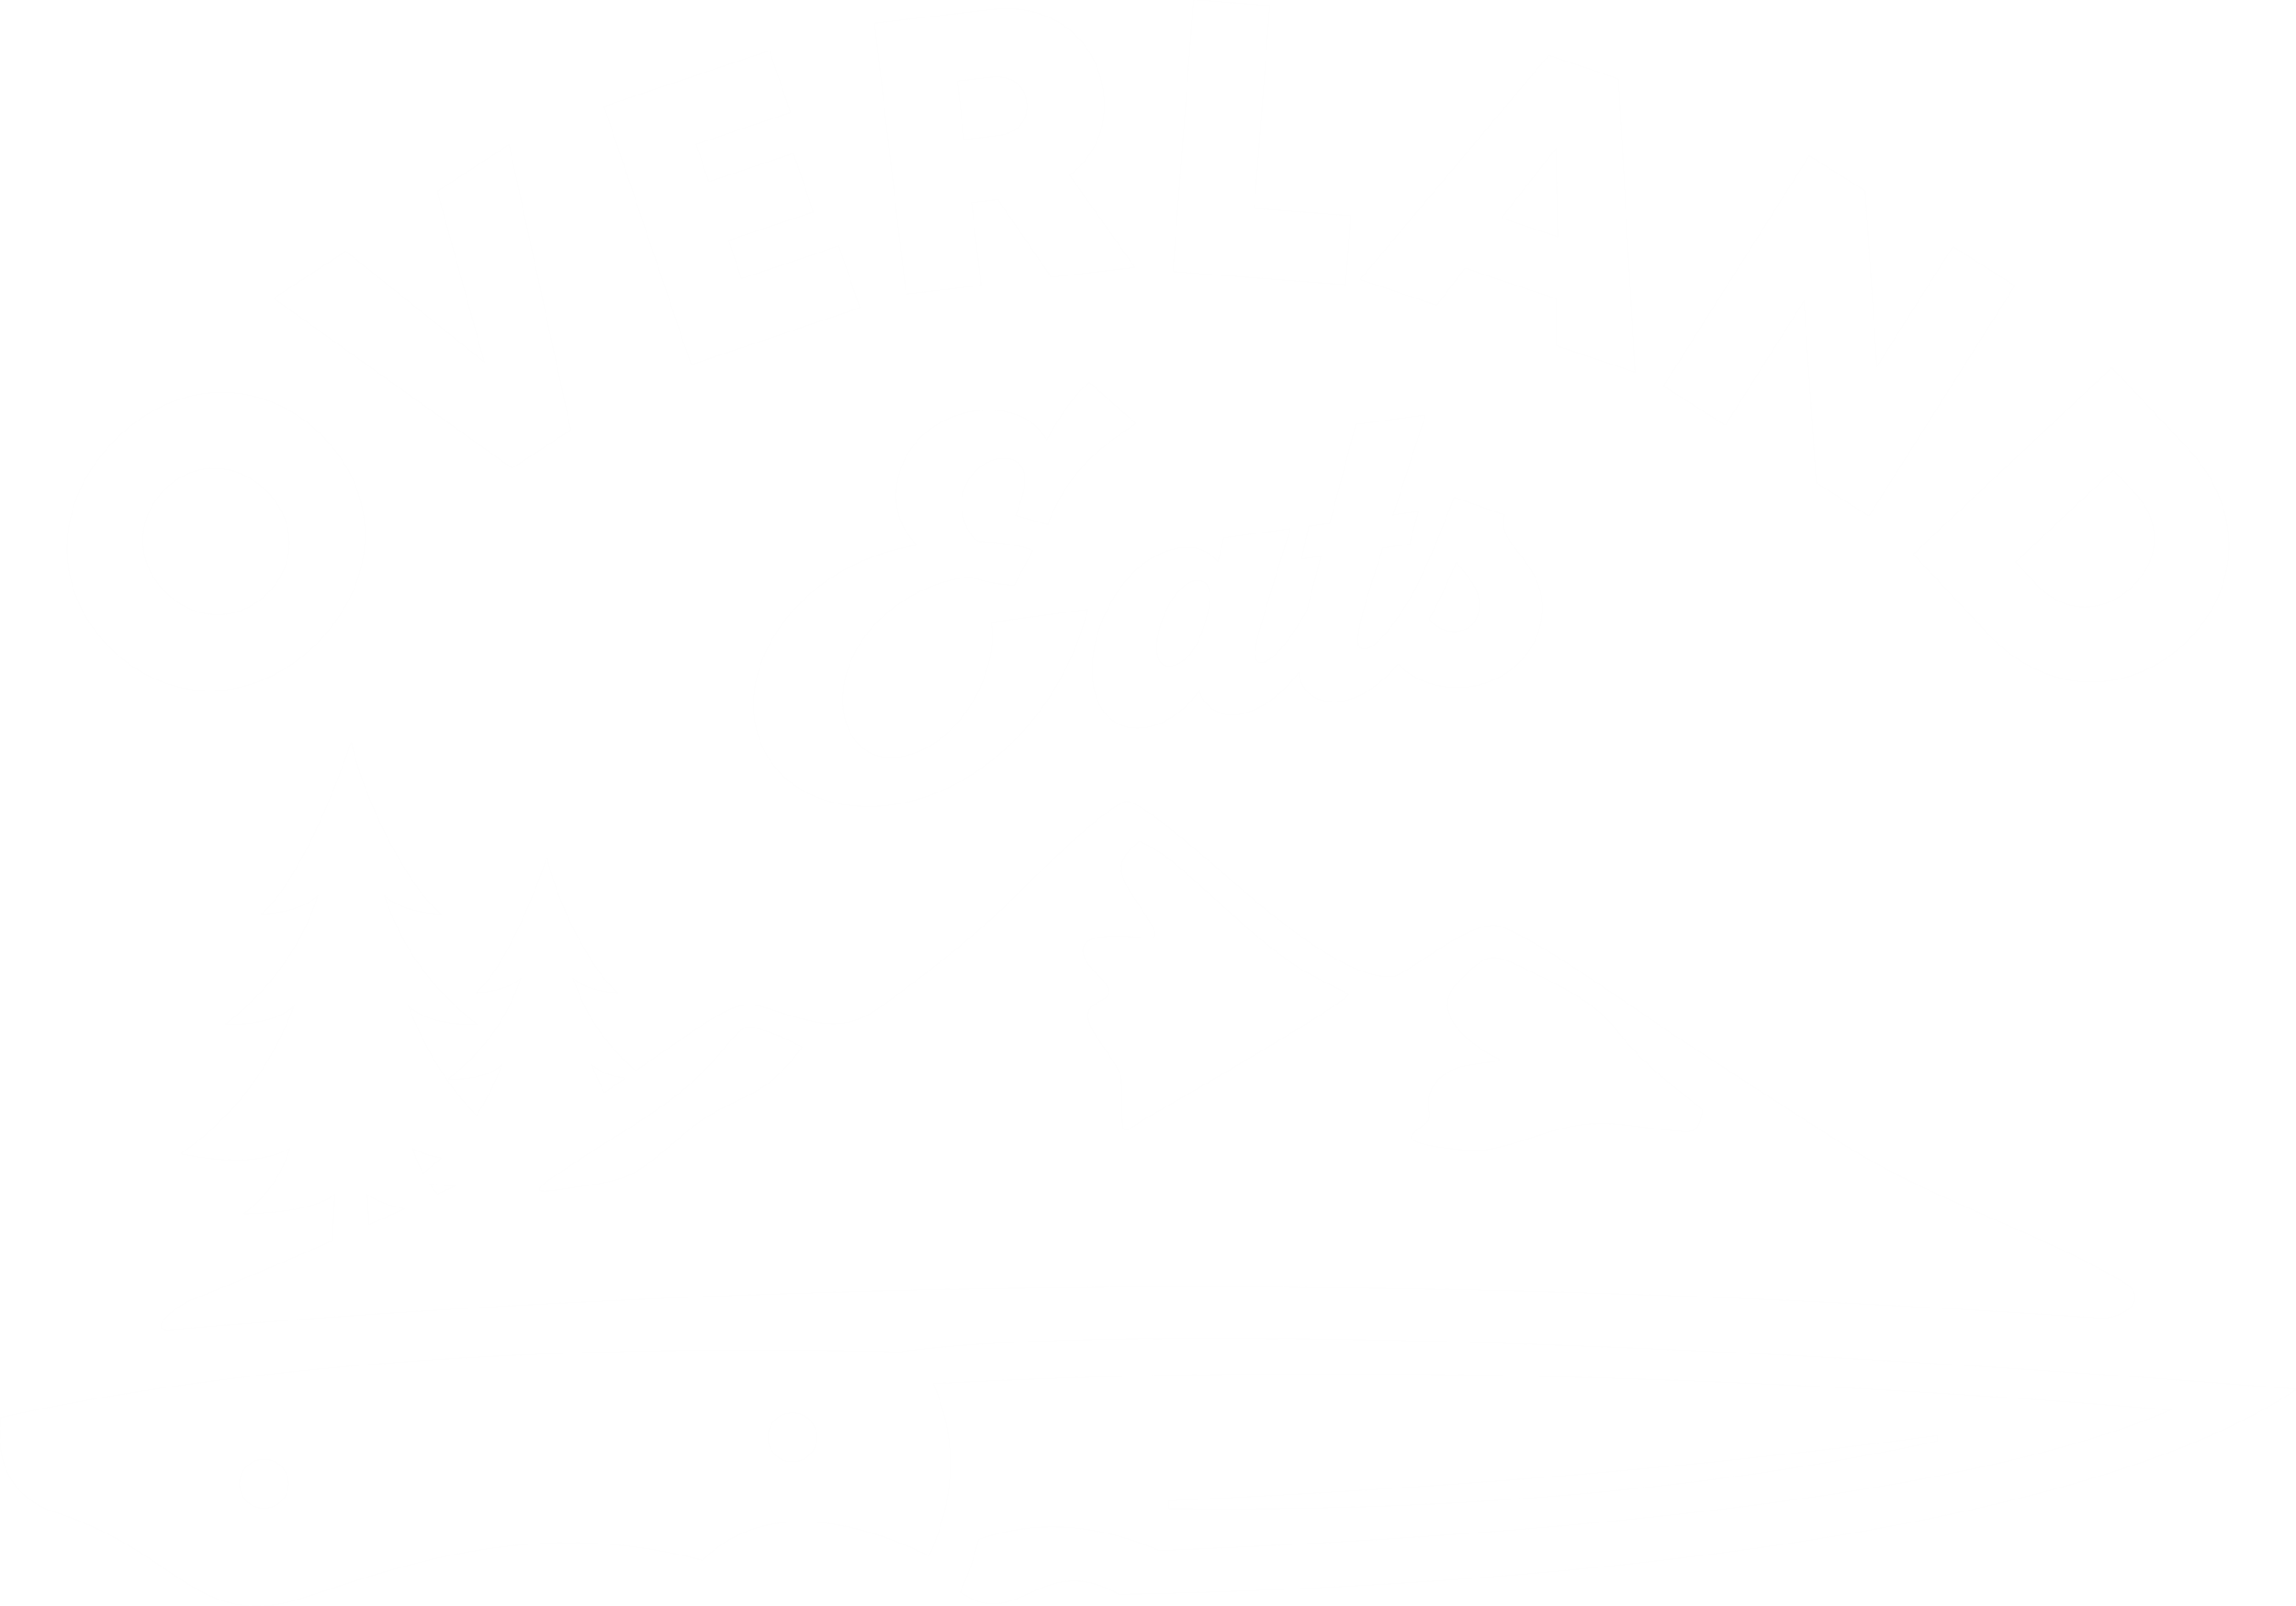 Overland Eats